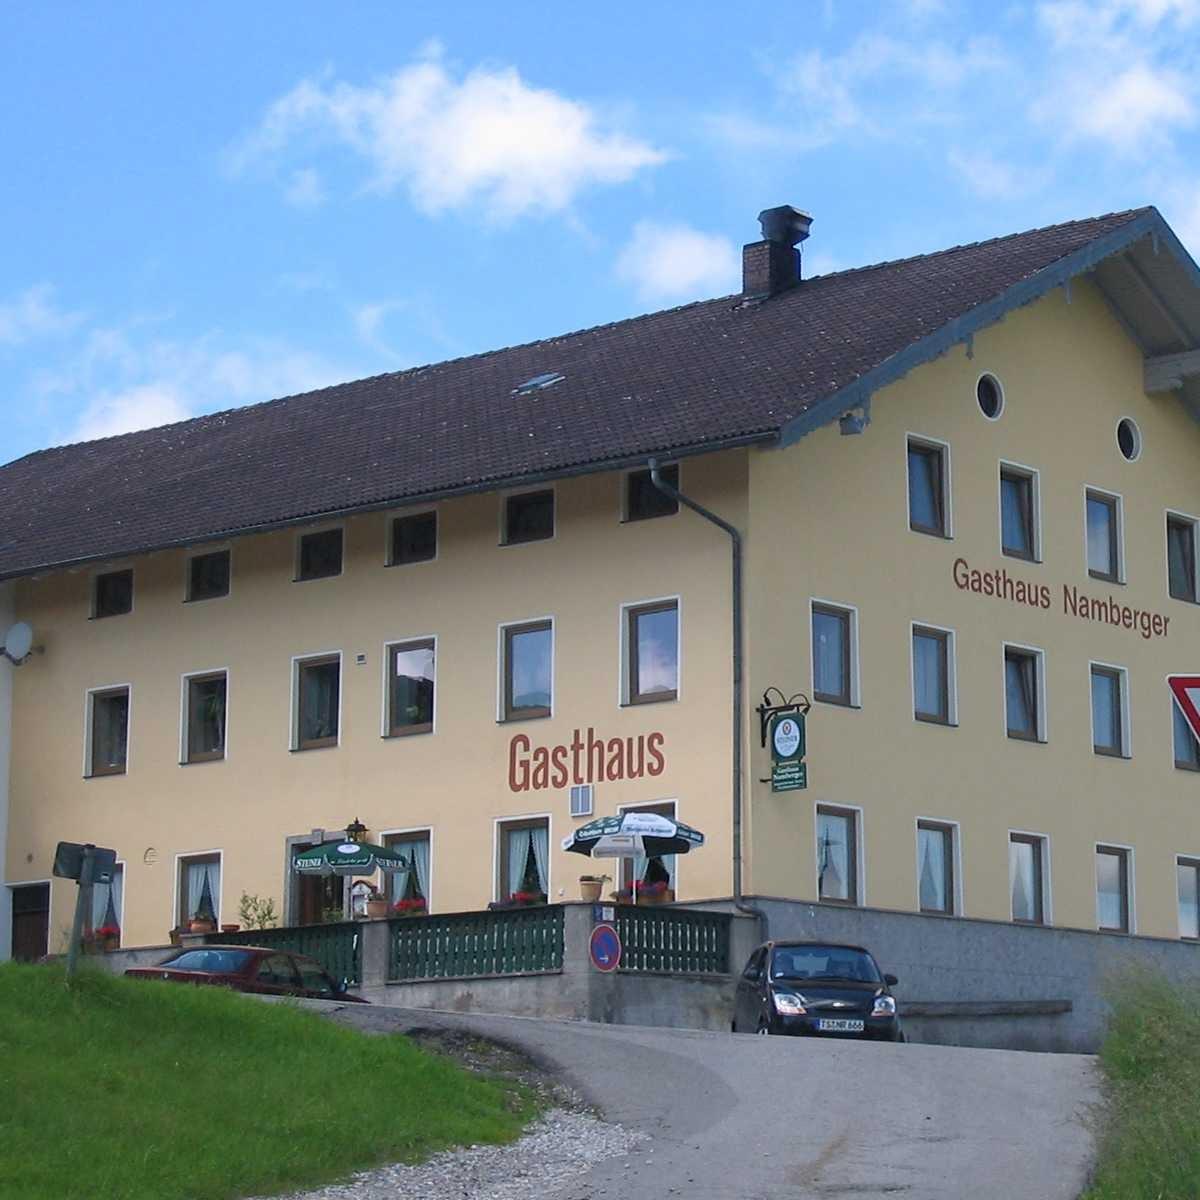 Restaurant "Gasthaus Namberger" in Traunreut